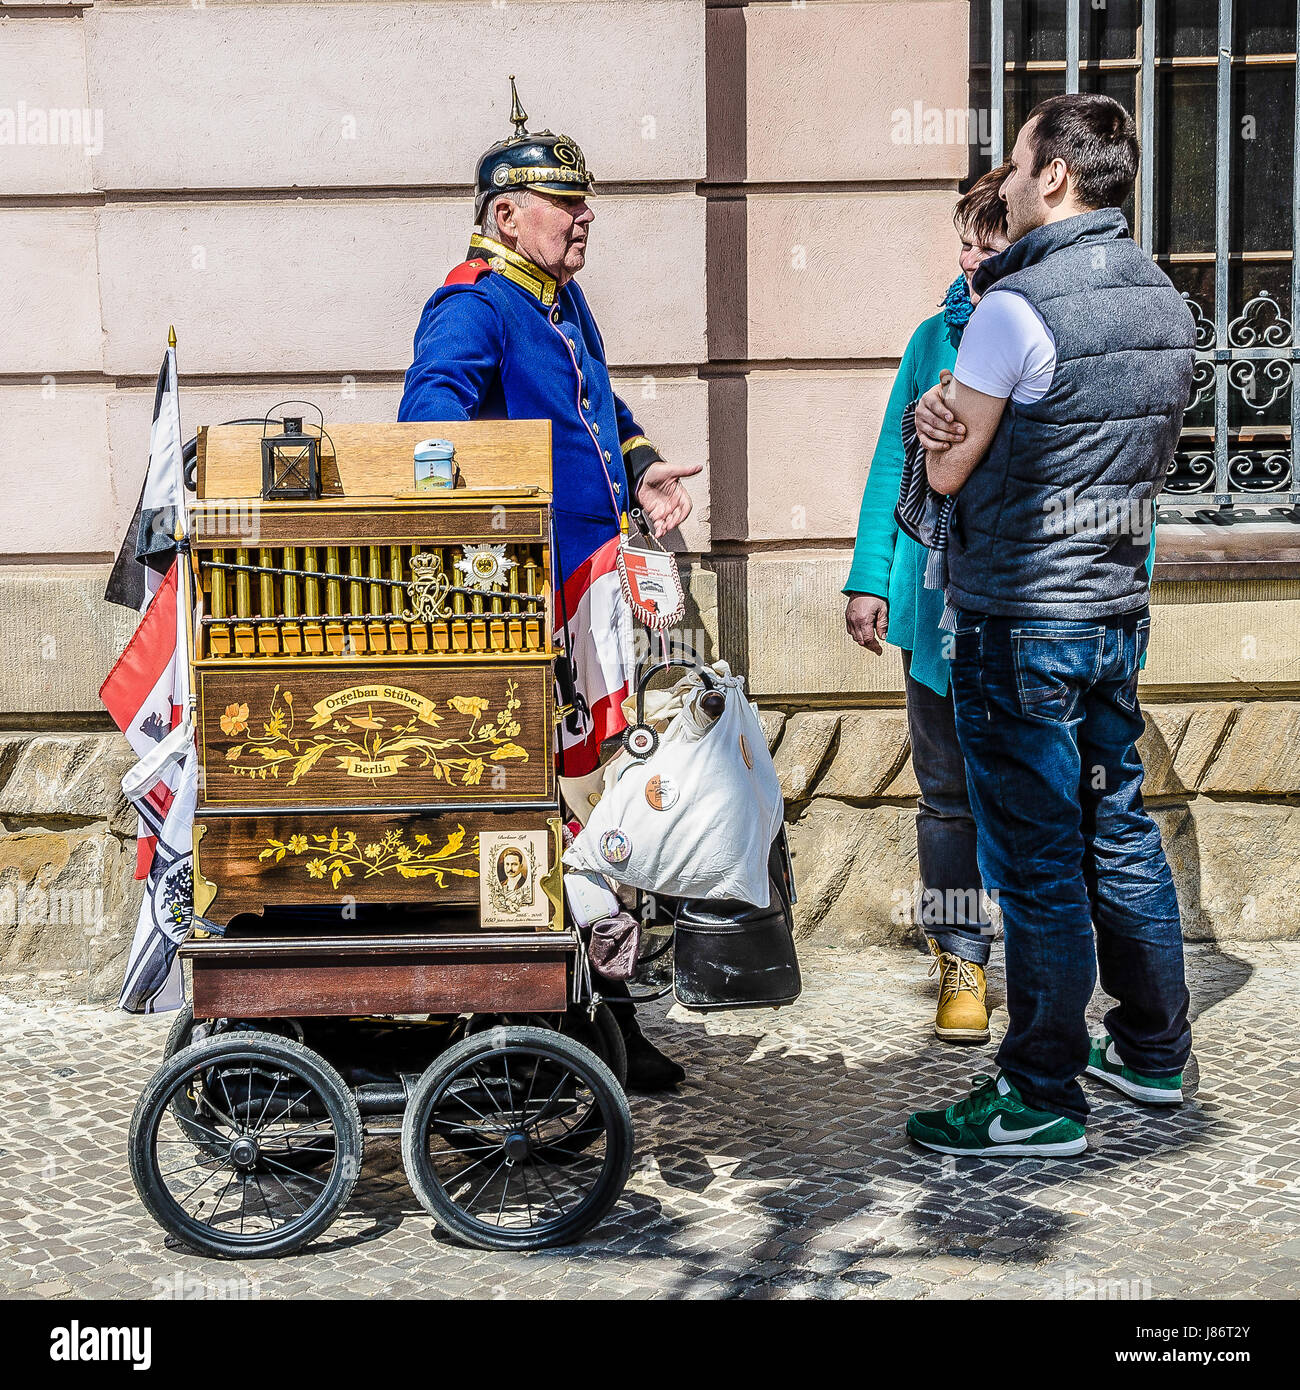 Ce qu'un nostalgique rencontre avec un musicien de rue de Berlin en uniforme militaire prussien devant le musée d'histoire allemande. Banque D'Images